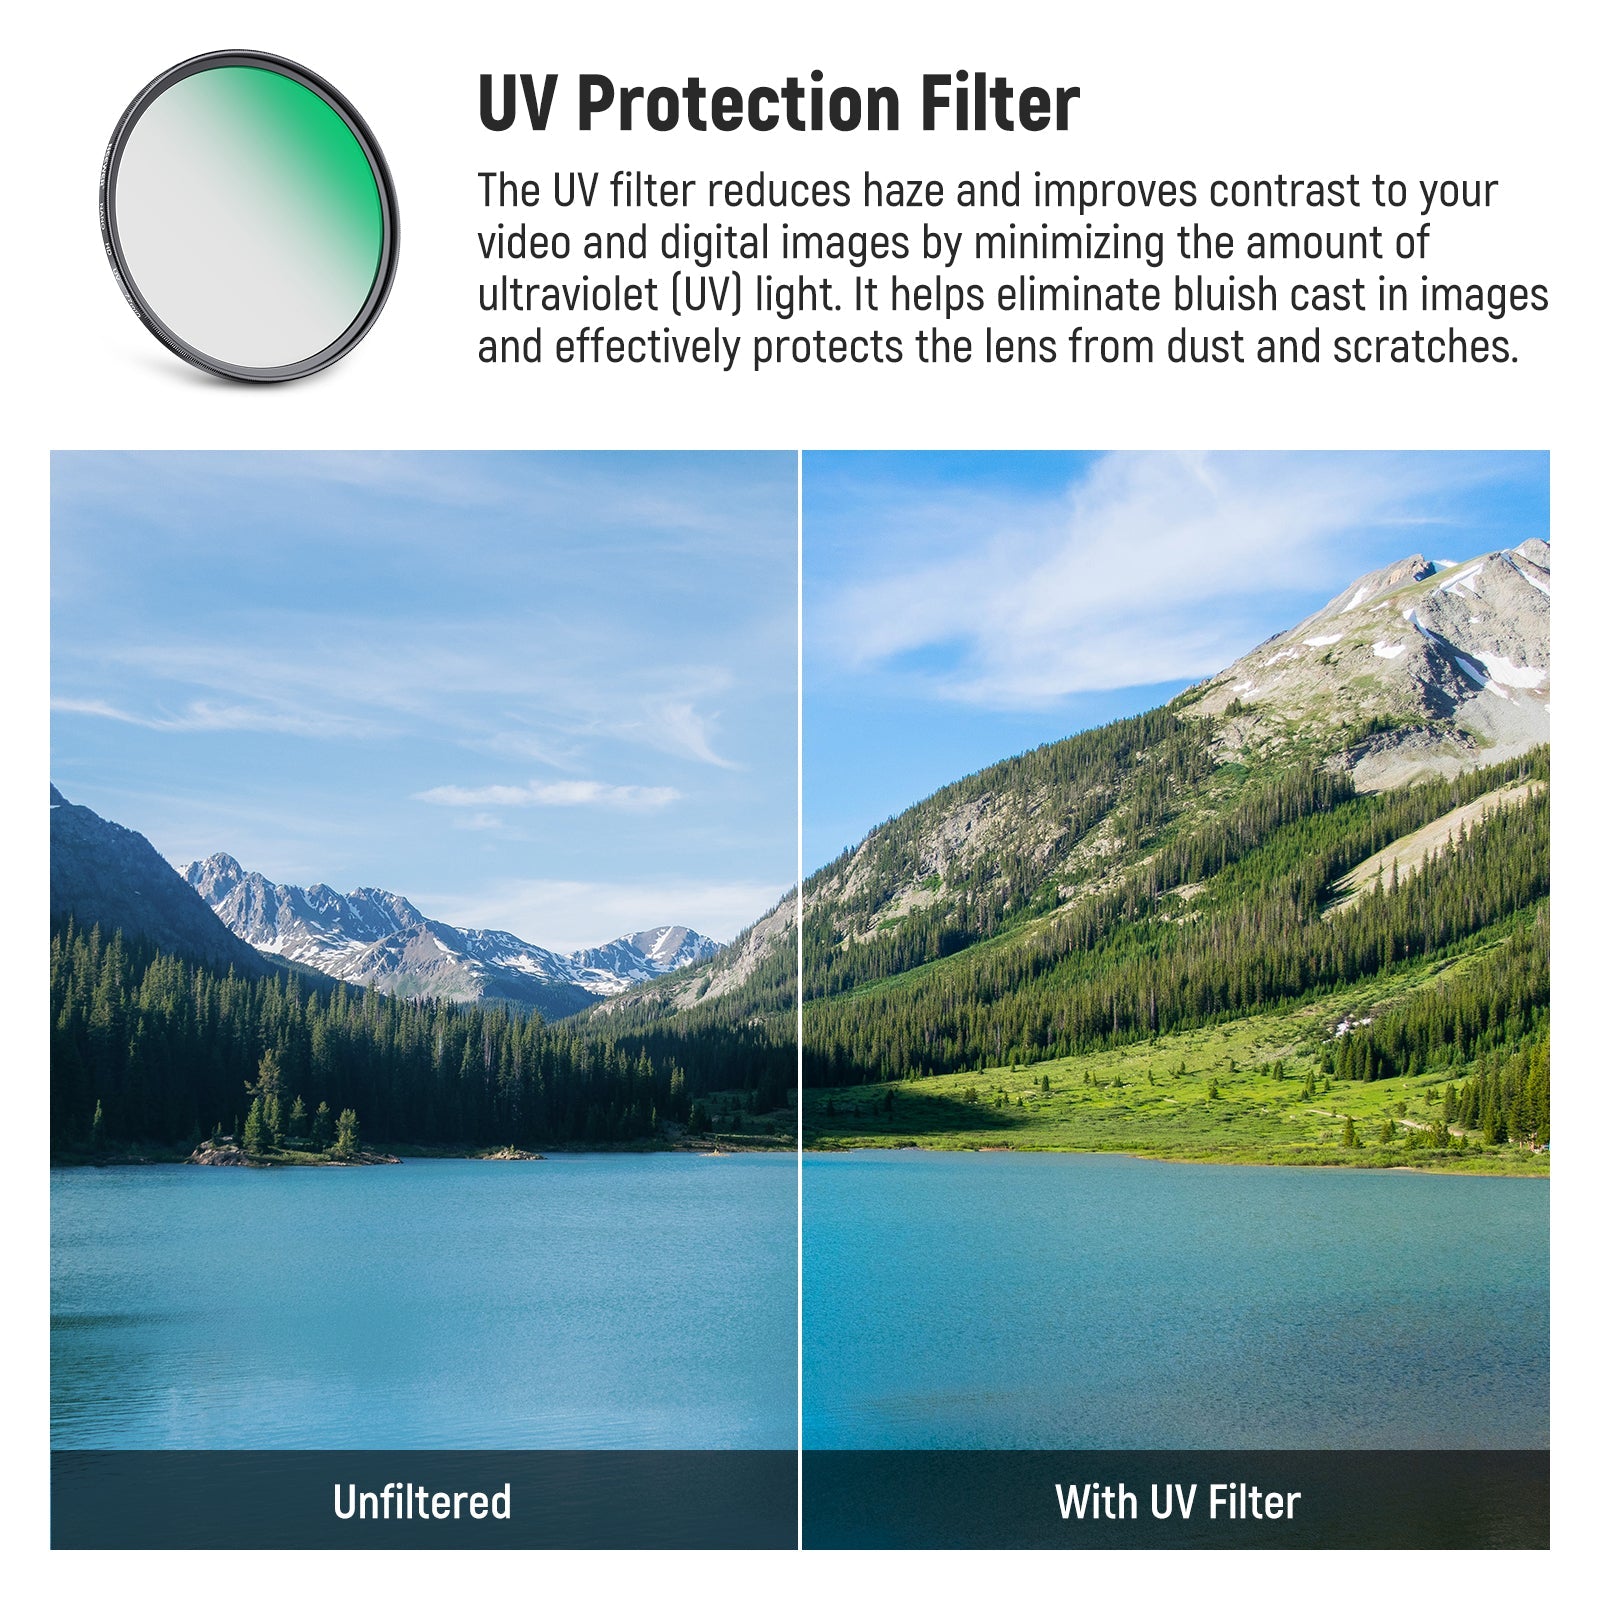 NEEWER CPL UV Lens Filter Kit - NEEWER – NEEWER.CA